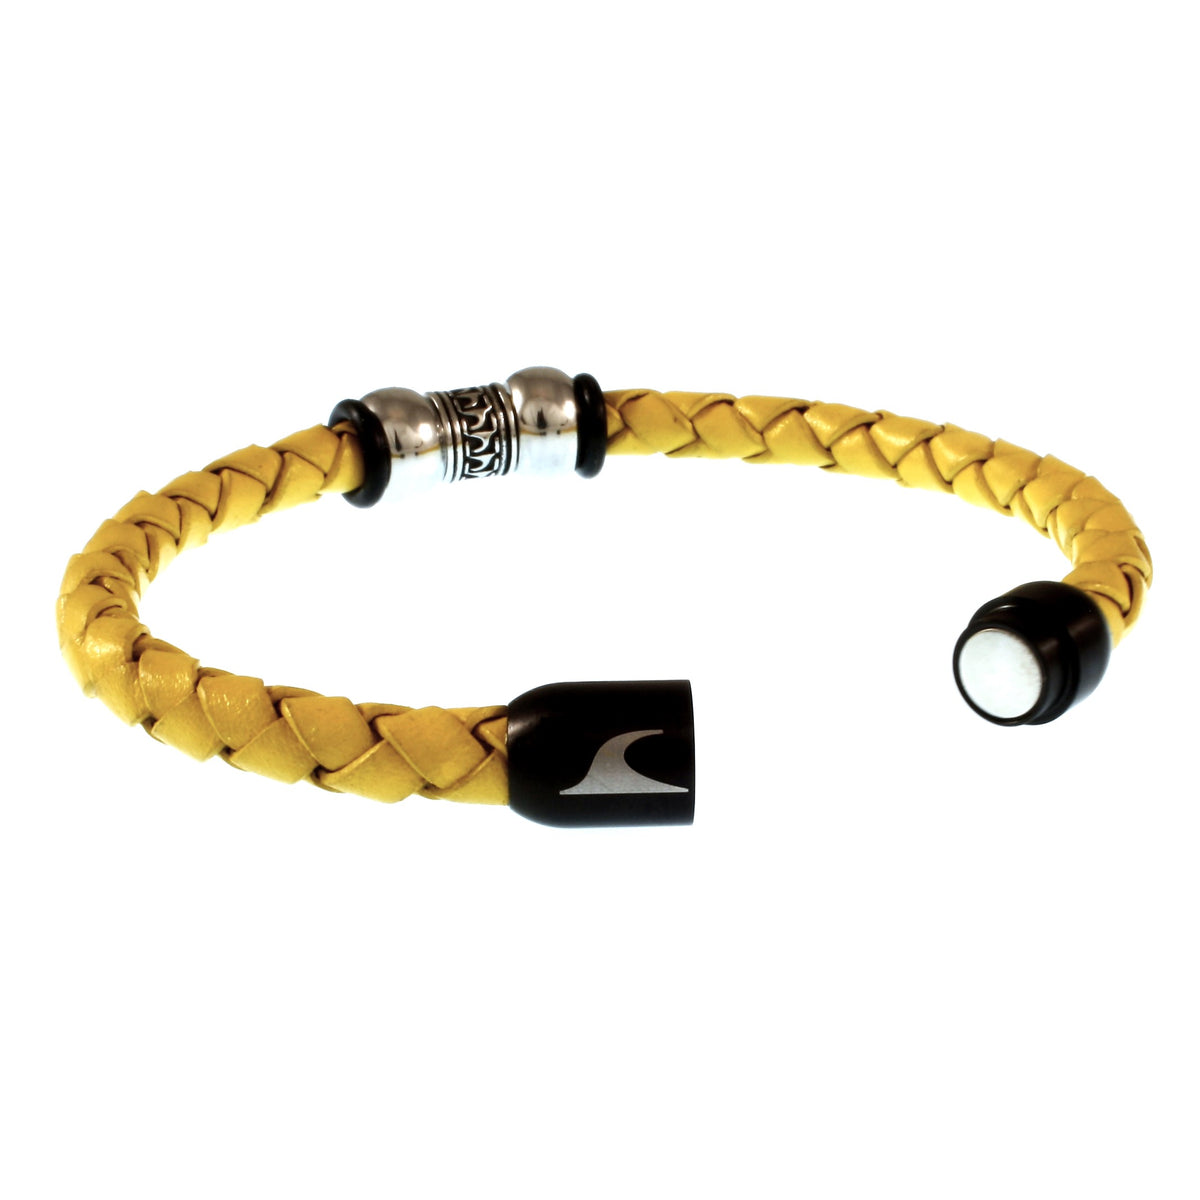 Herren-Leder-Armband-atoll-gelb-schwarz-geflochten-Edelstahlverschluss-offen-wavepirate-shop-f